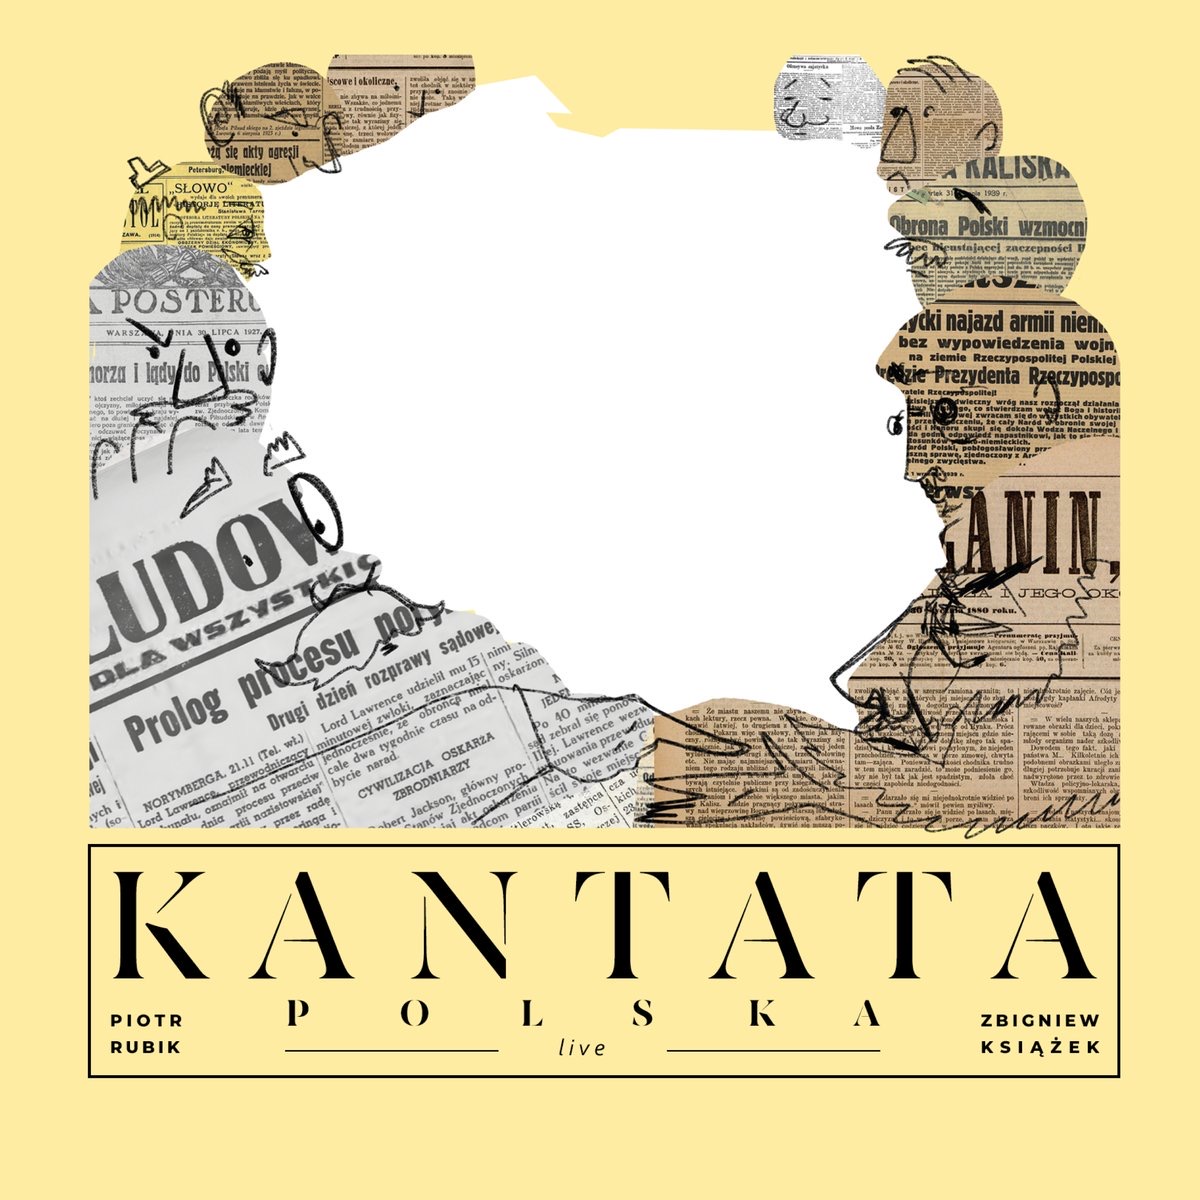 Kantata Polska released!